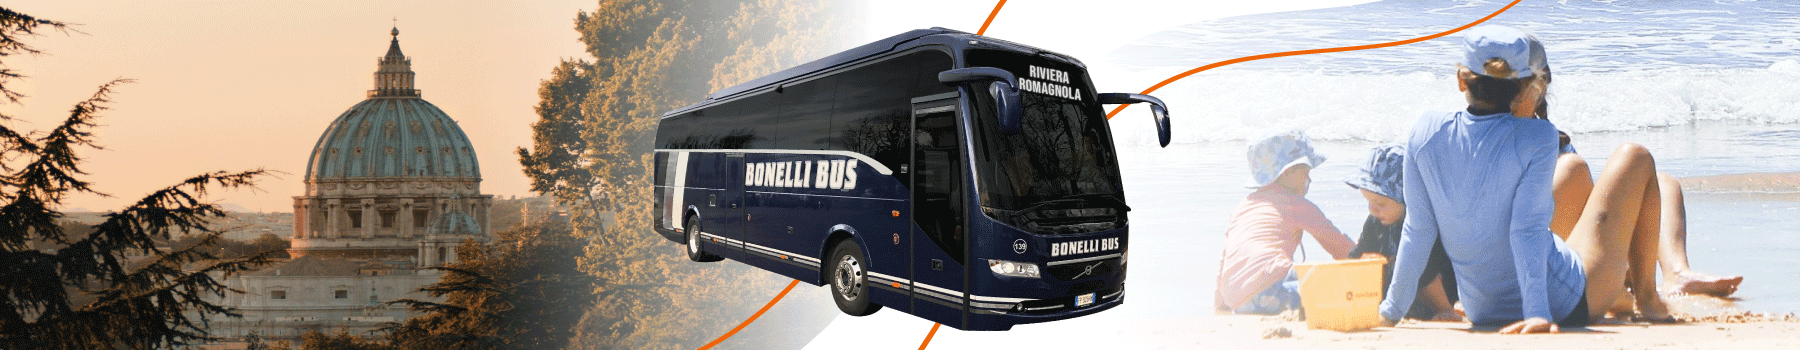 Pullman diretto e senza cambi da Roma a Rimini, Riccione, Cesenatico, Cattolica | Bonelli Bus